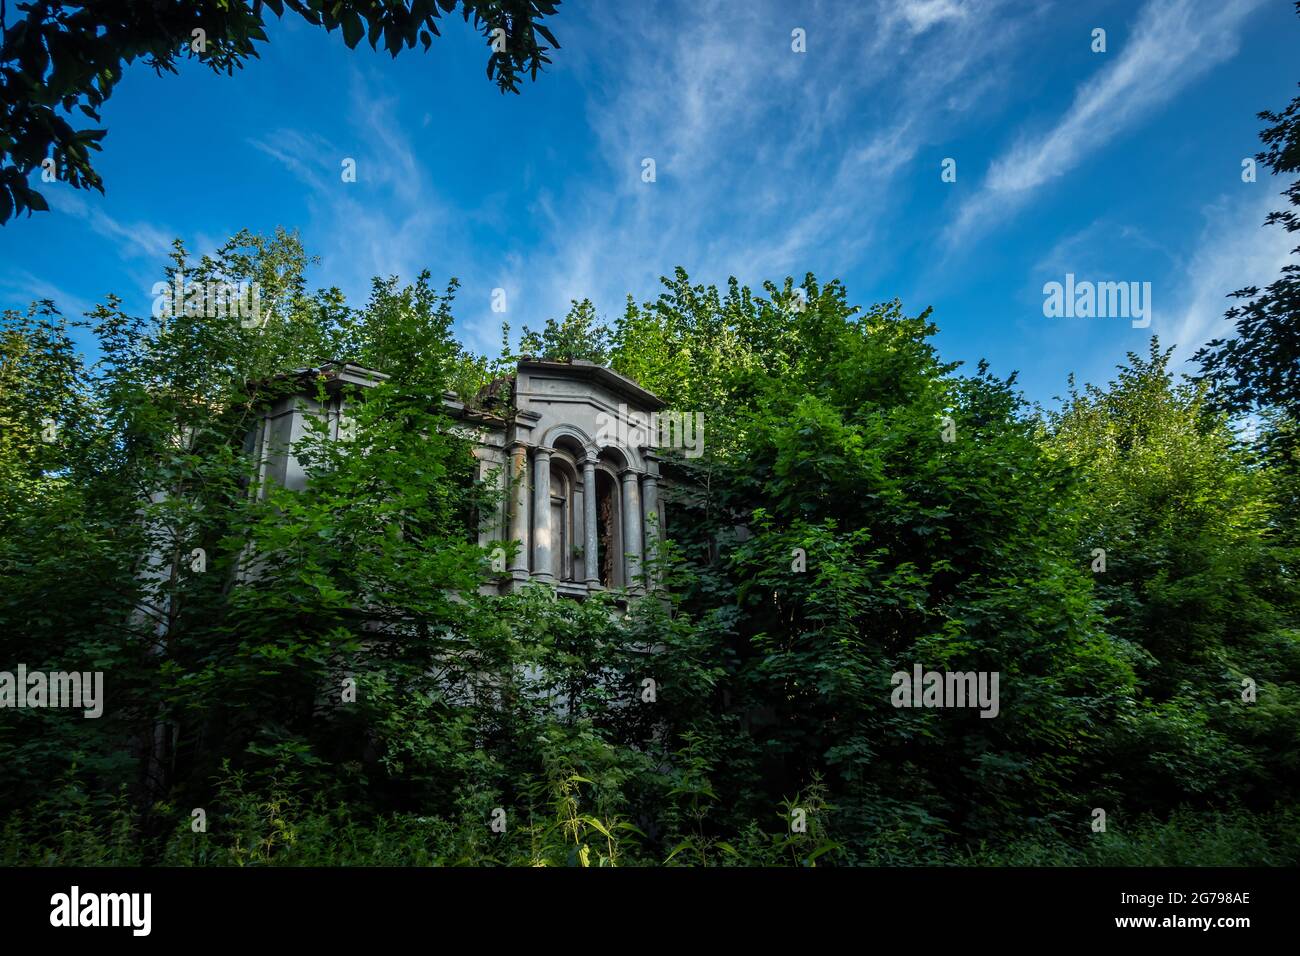 Ruines d'un ancien palais abandonné envahi de buissons. Ciel bleu, gommage vert autour de l'objet. Photo prise à midi, conditions d'éclairage parfaites Banque D'Images